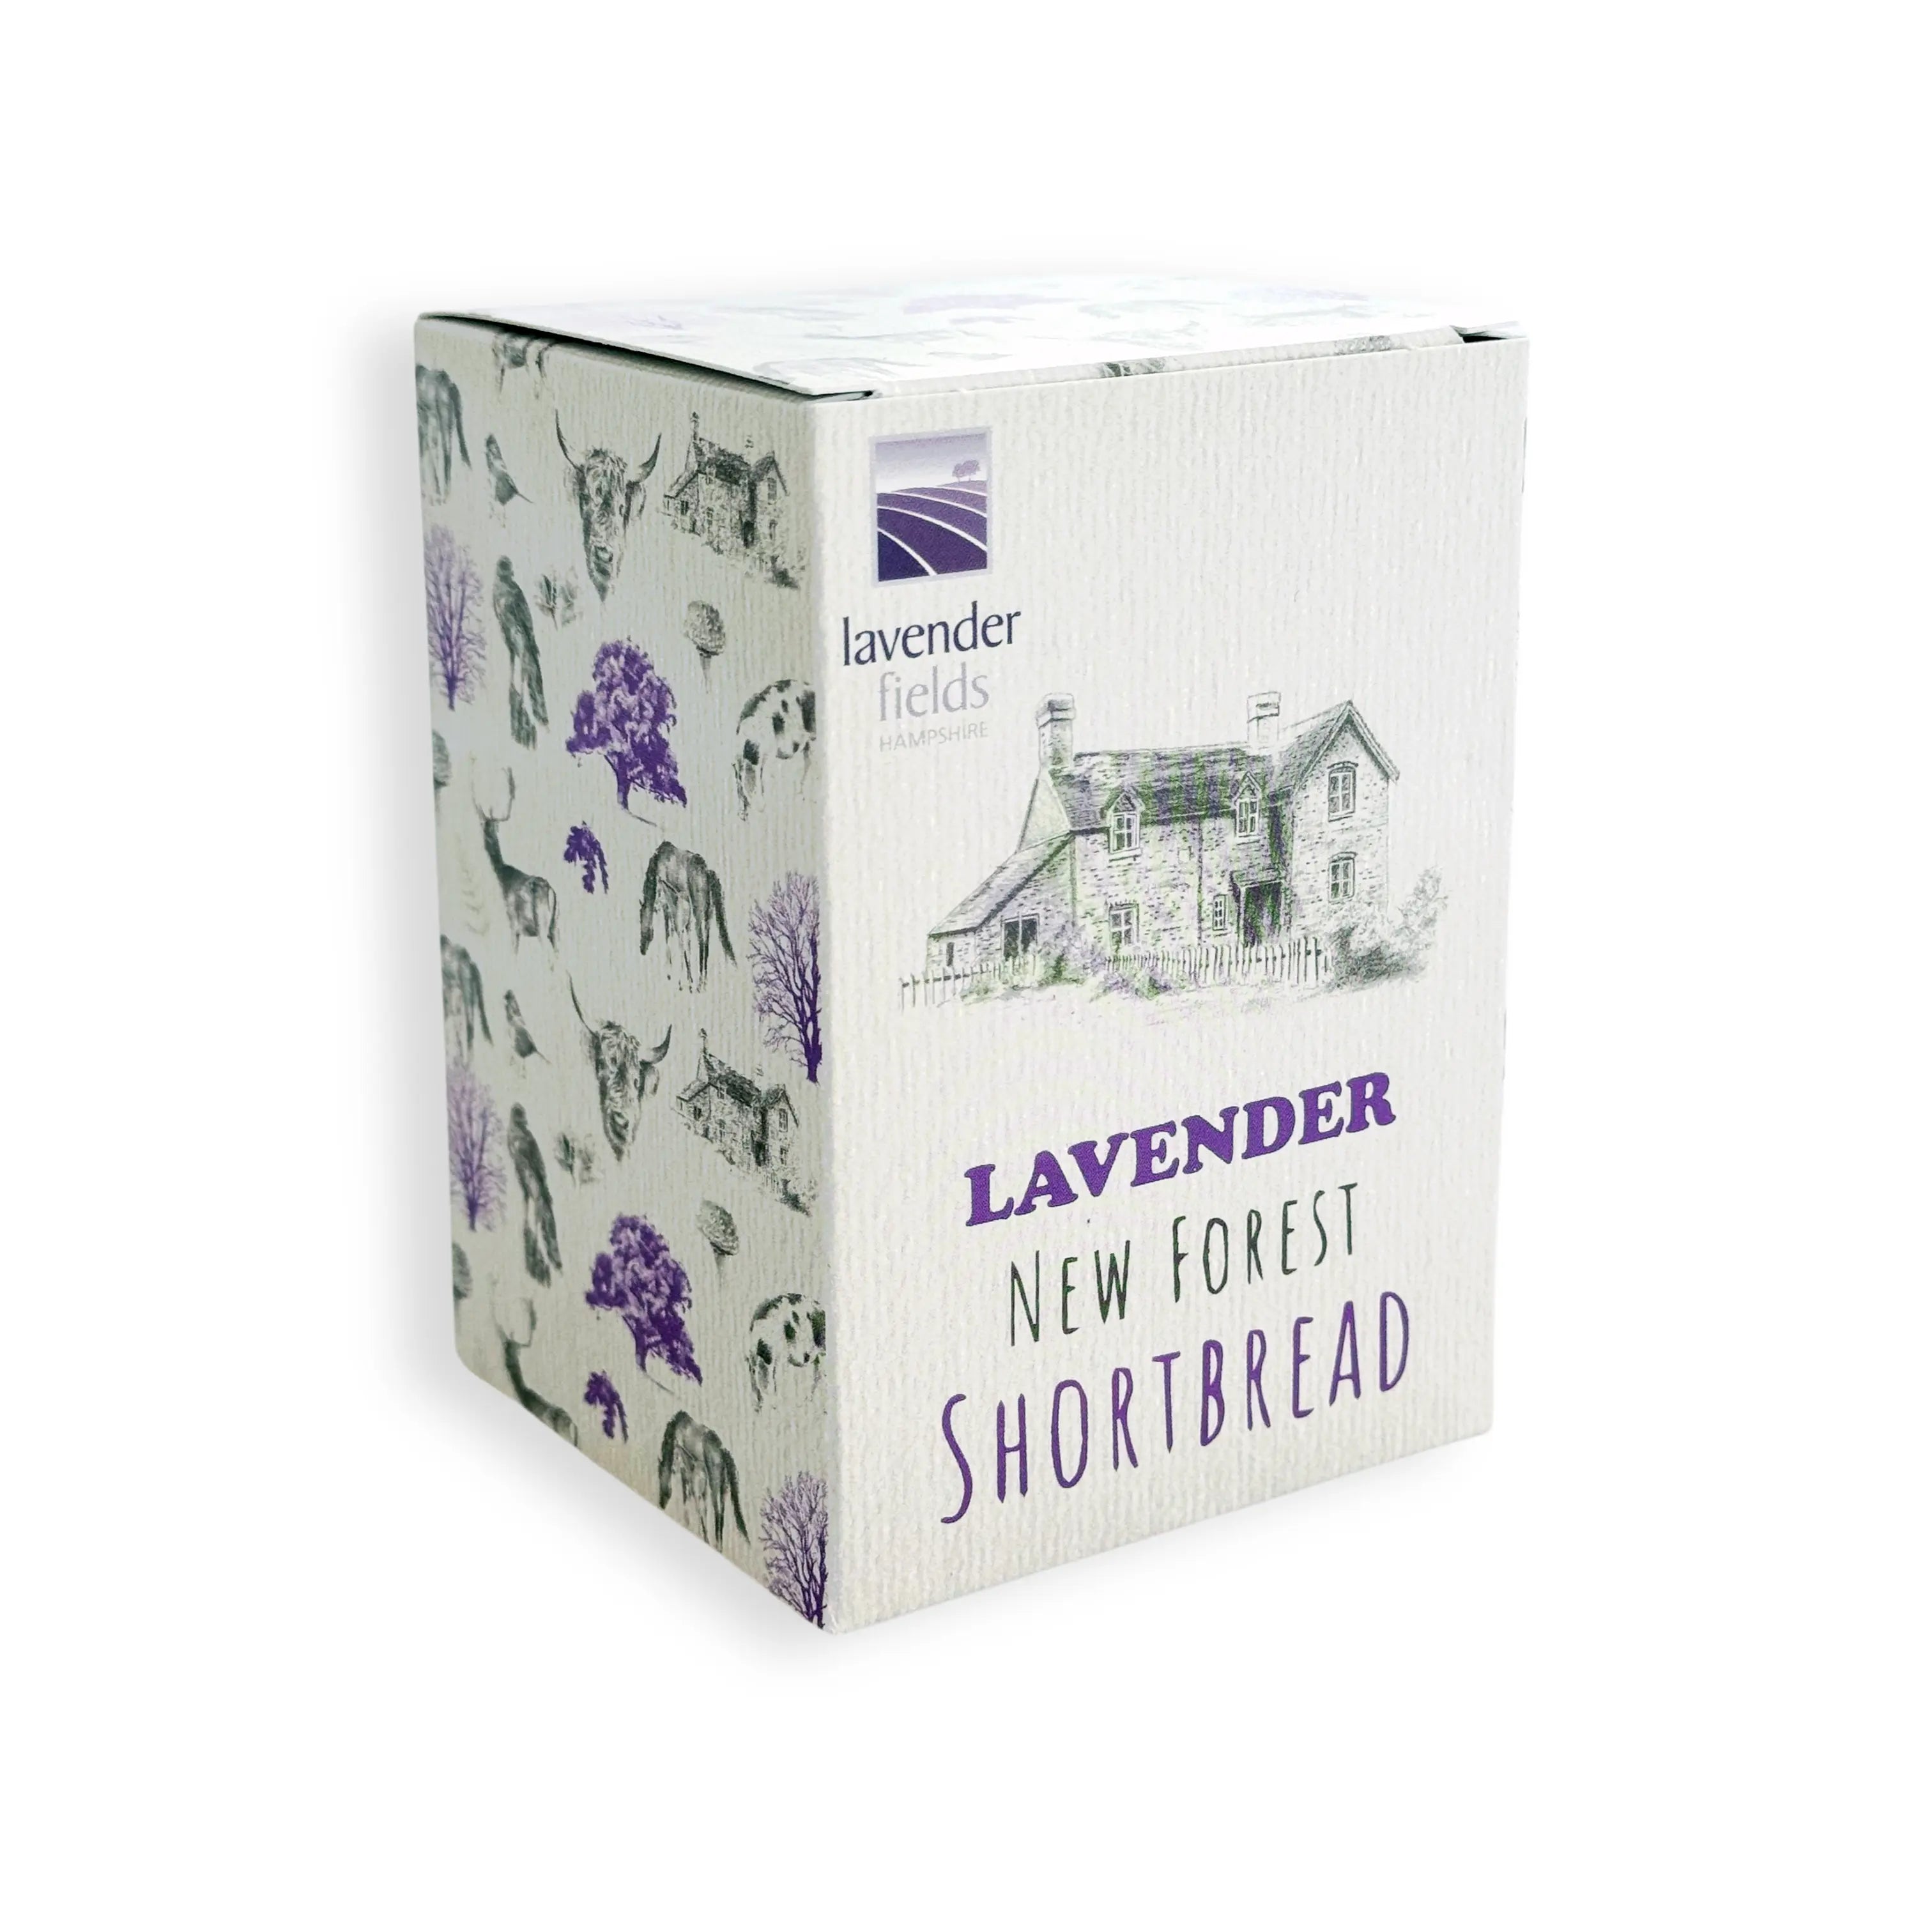 Lavender Shortbread | Foodie Gift | Lavender Shortbread Cookies